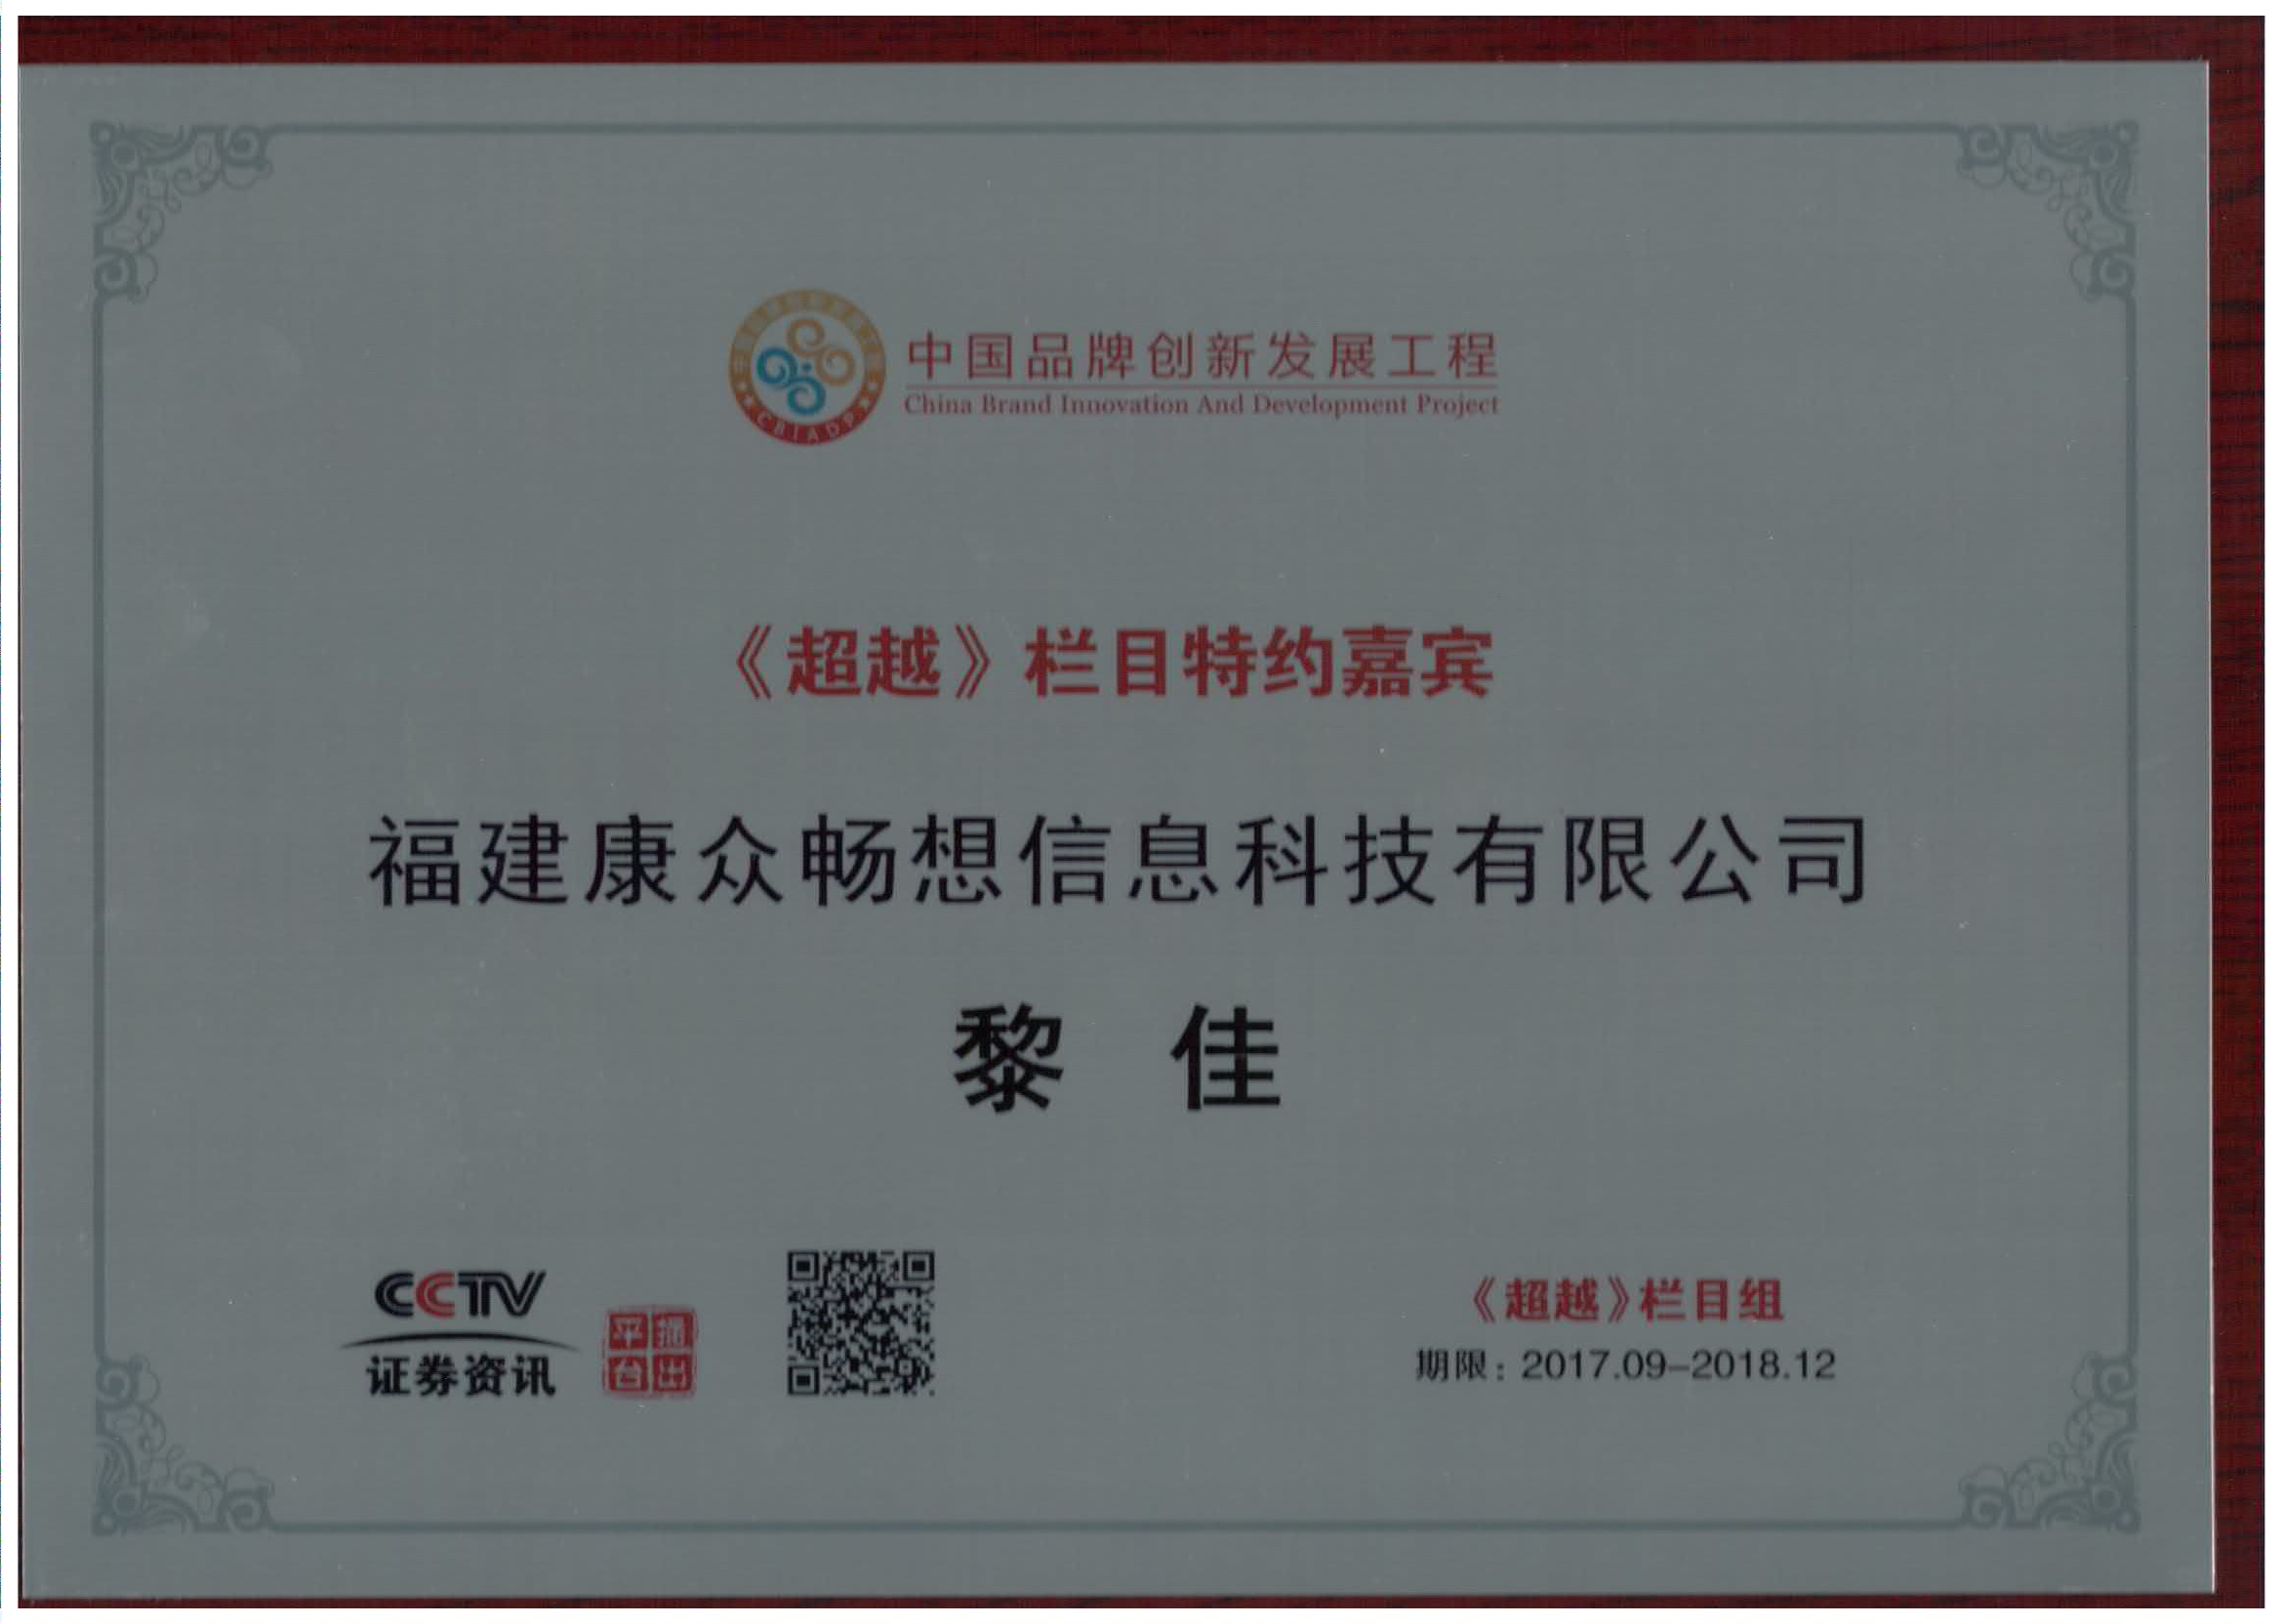 成为cctv证券资讯频道《超越》栏目特约嘉宾,并颁发荣誉证书!